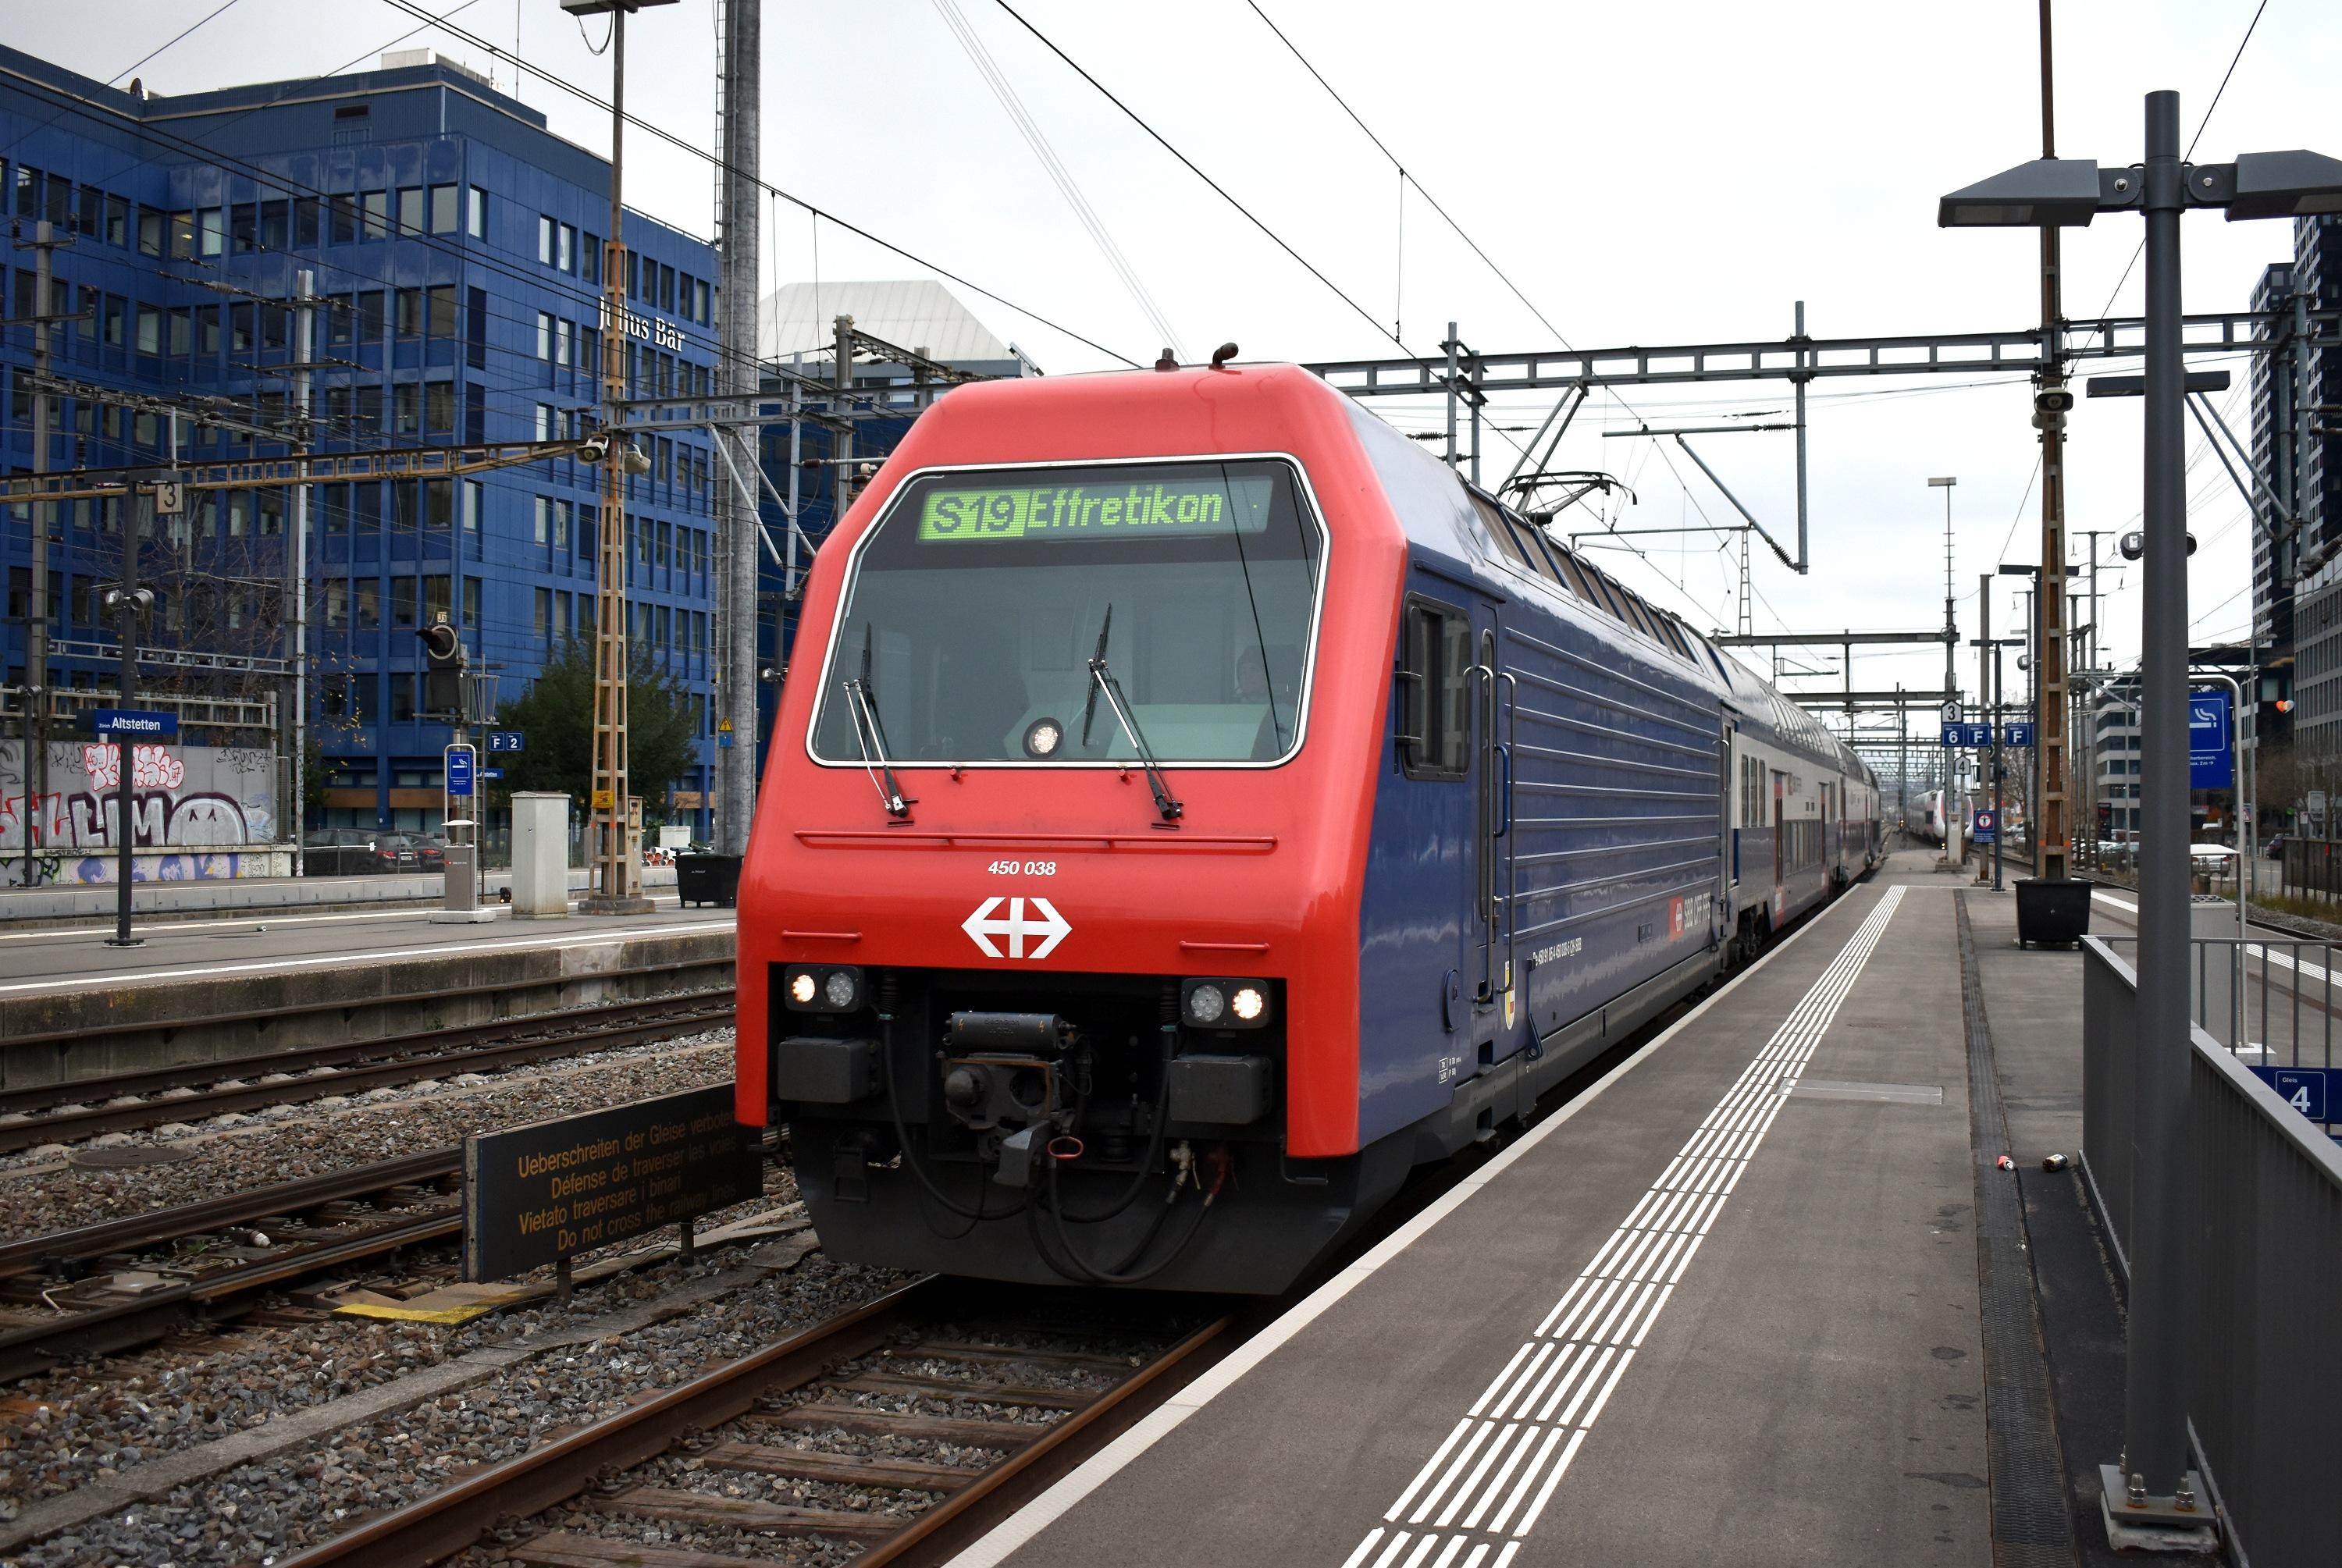 S19 Effretikon Zürich-Altstetten